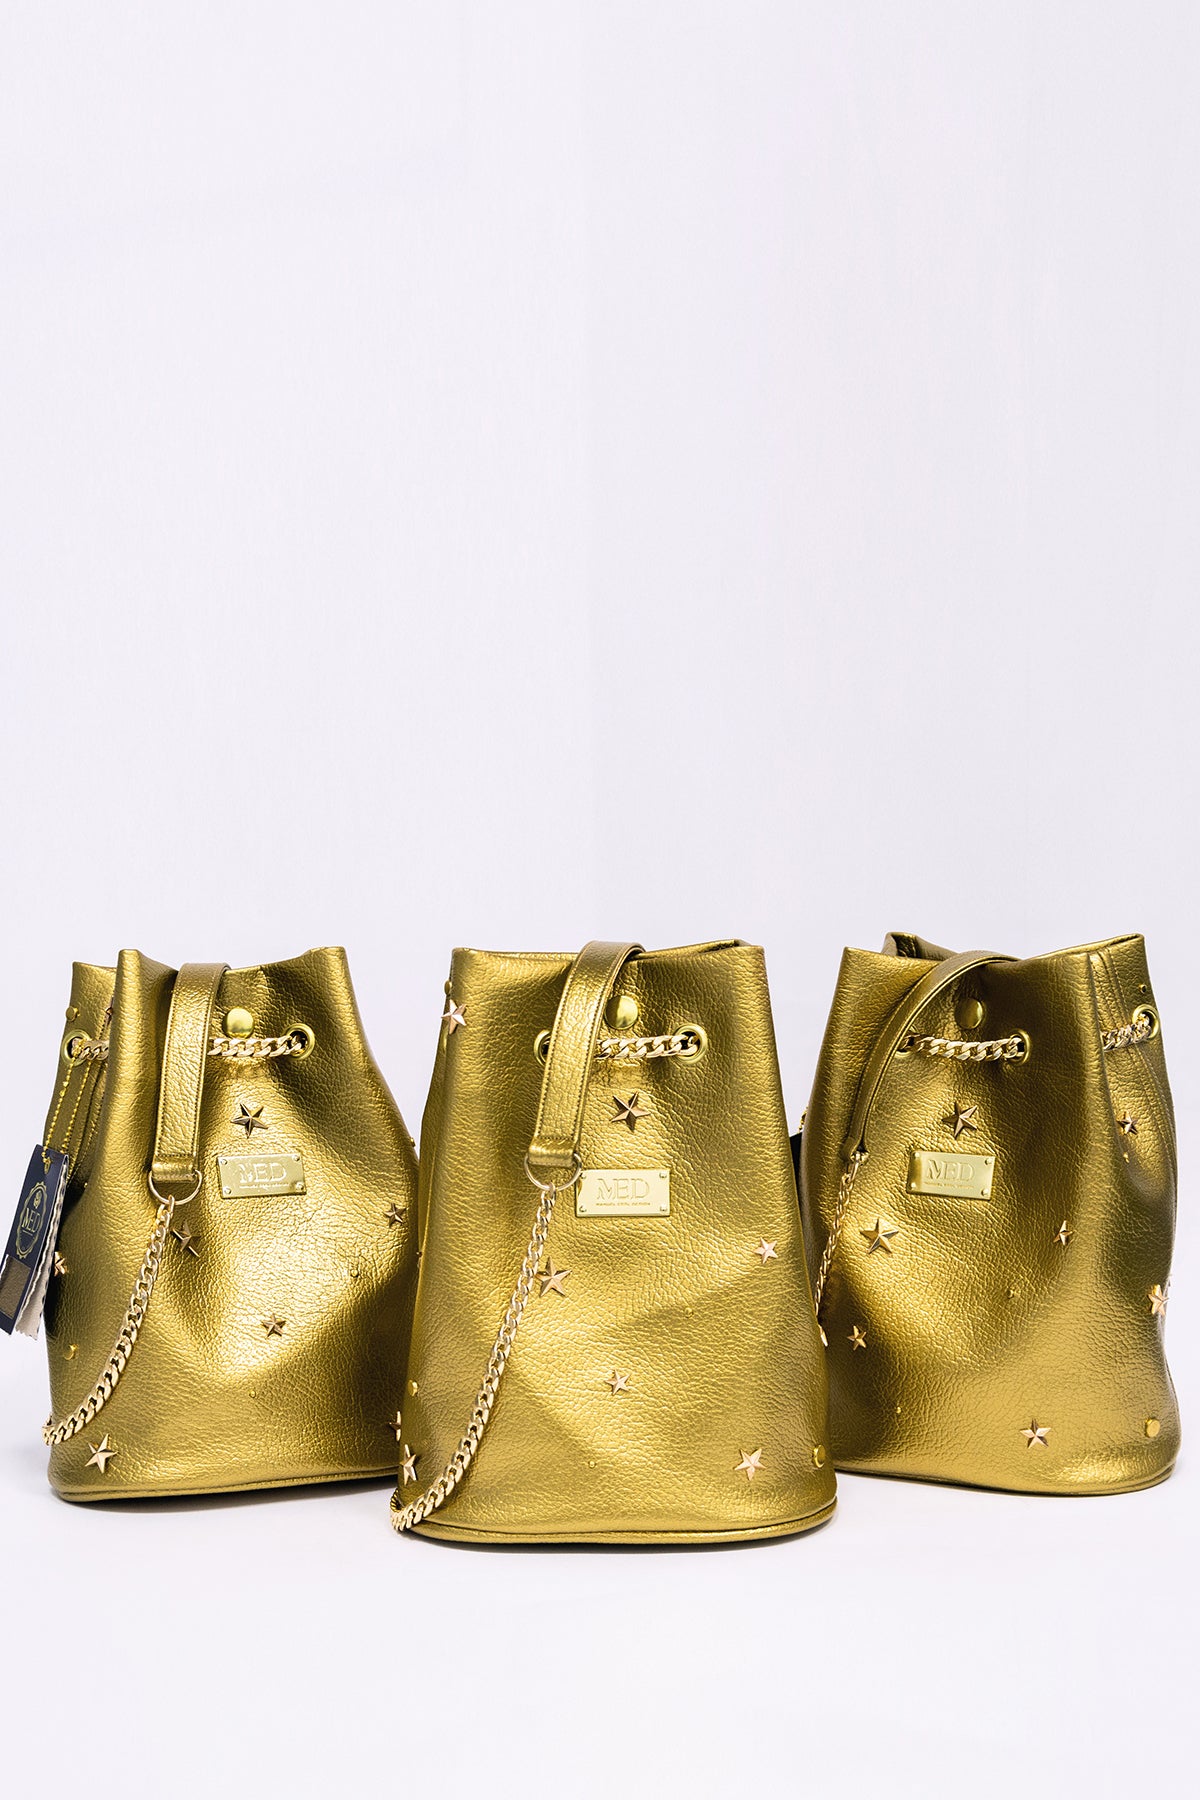 Bucket Bag "SPACE" - Gold - Manuel Essl Design